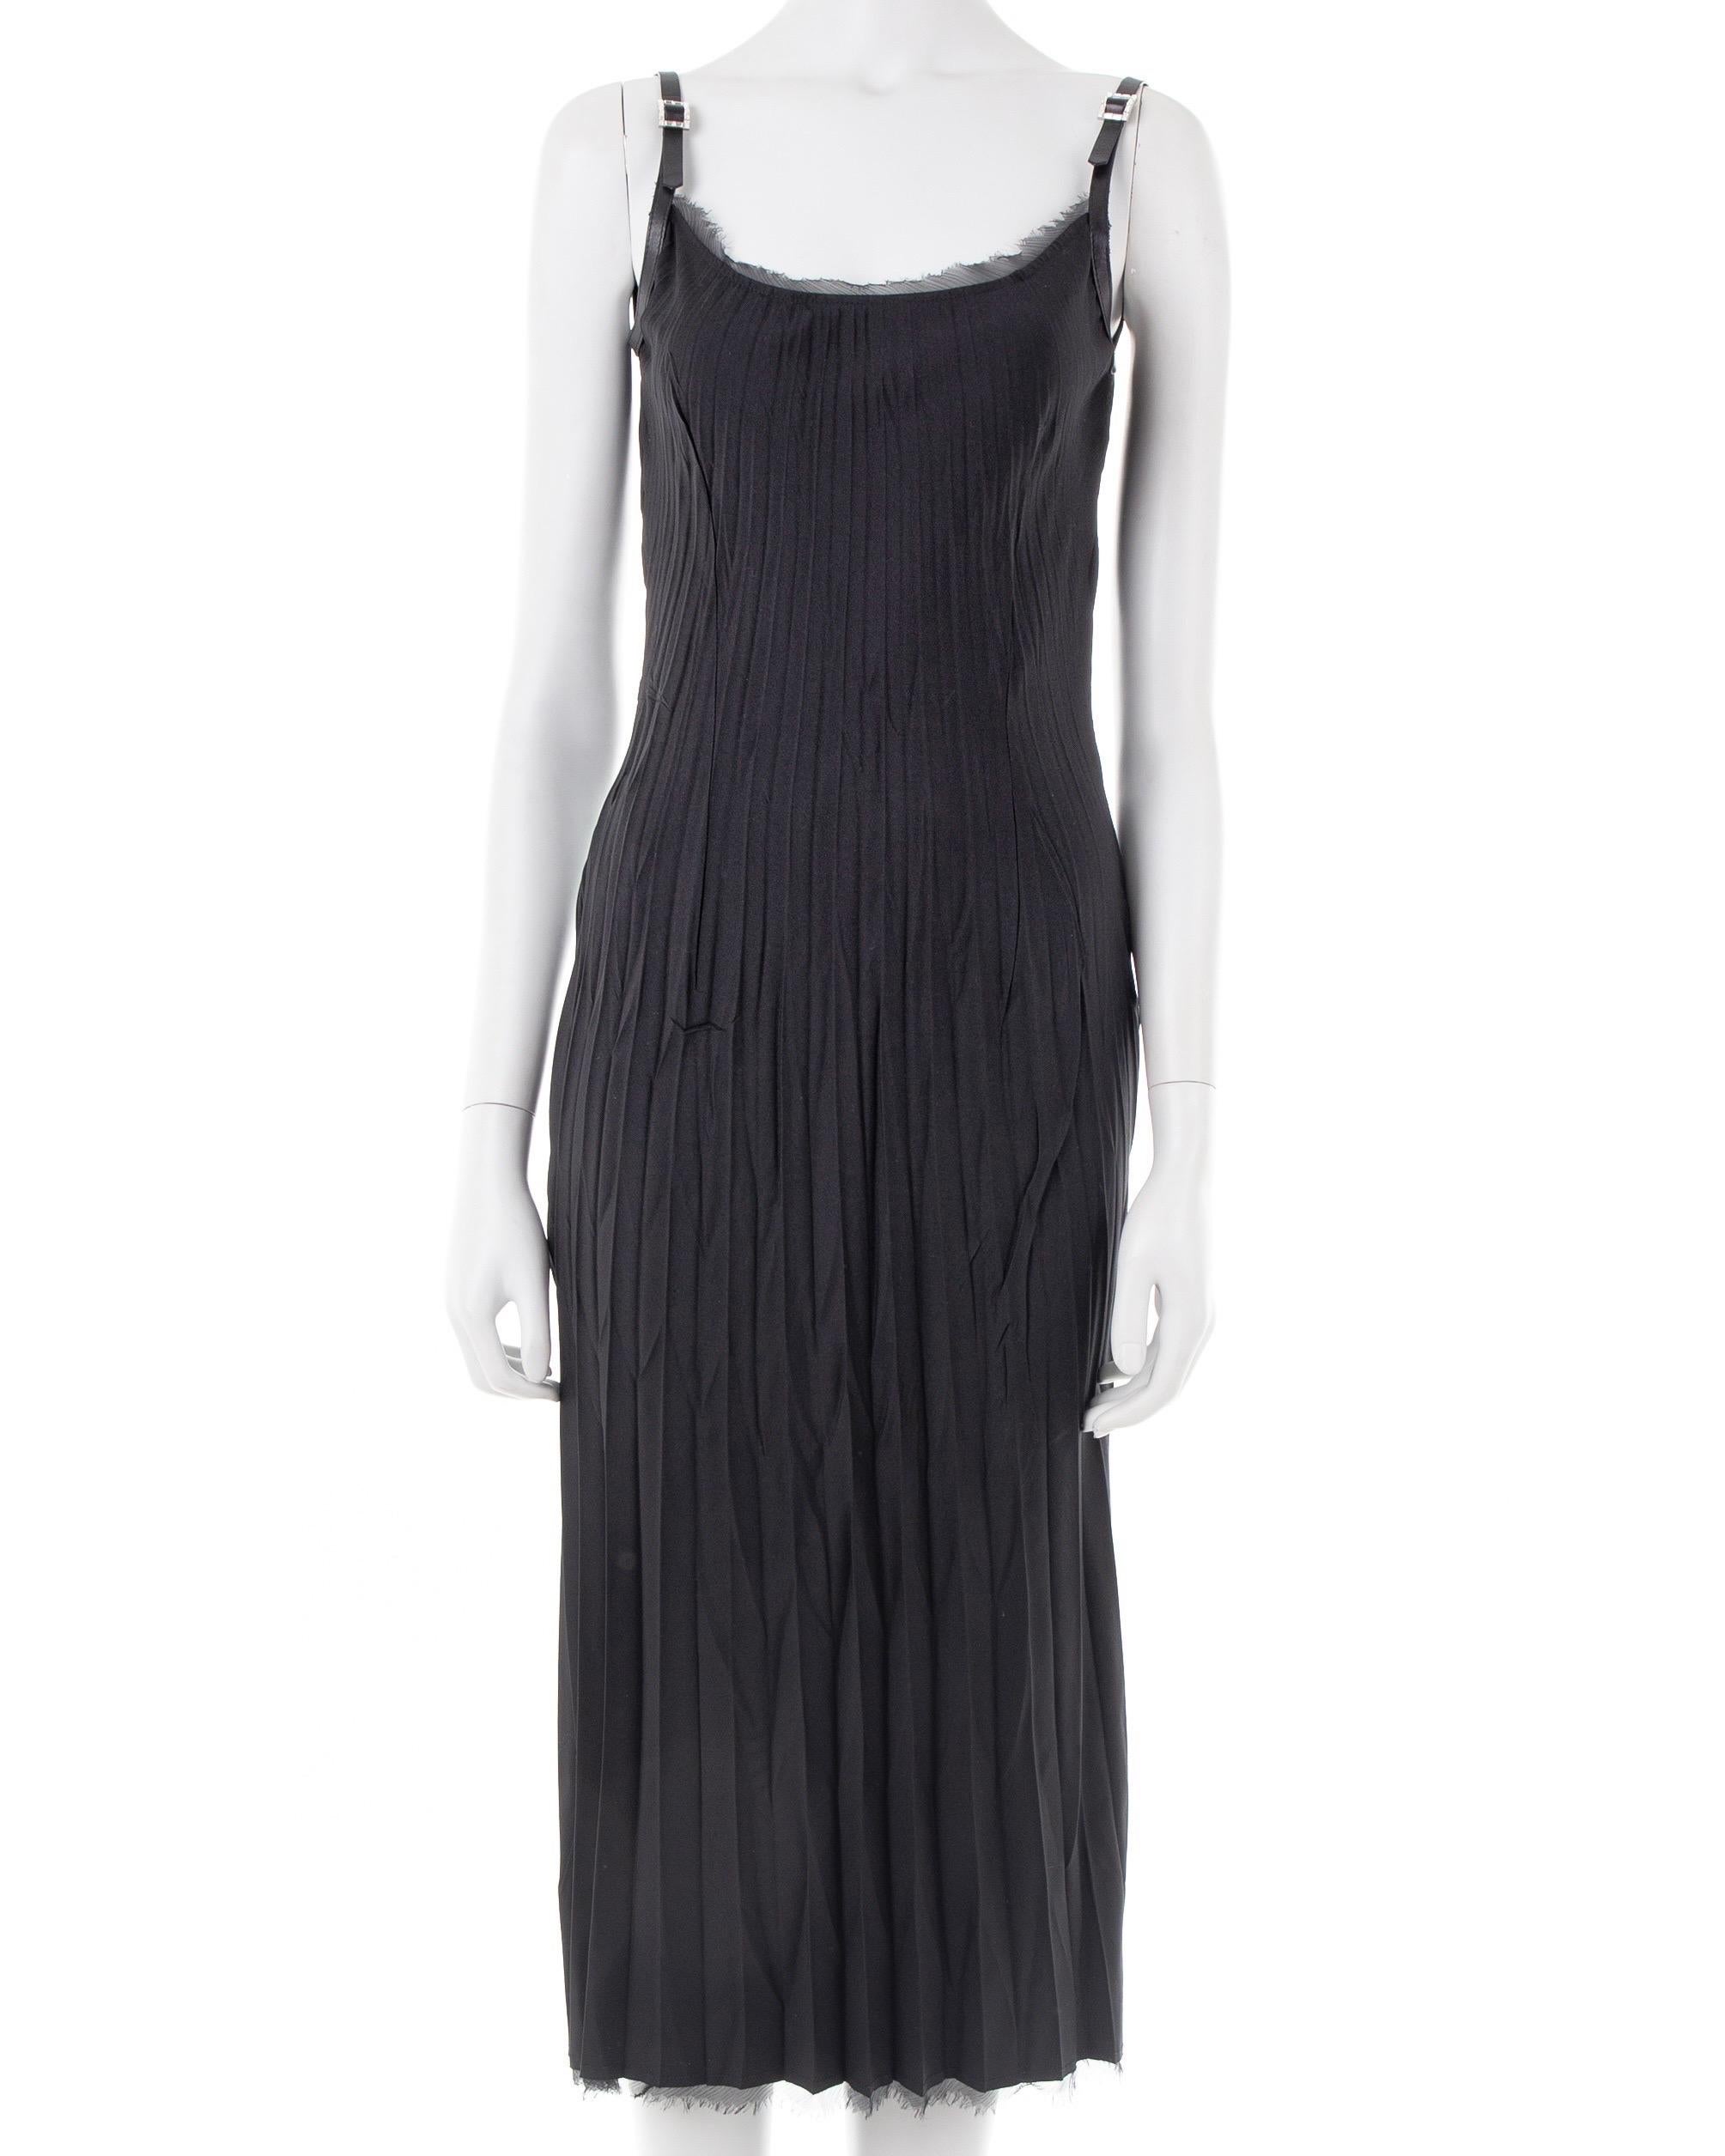 Ermanno Scervino black silk crinkled dress with crystal straps, 2000s ca.